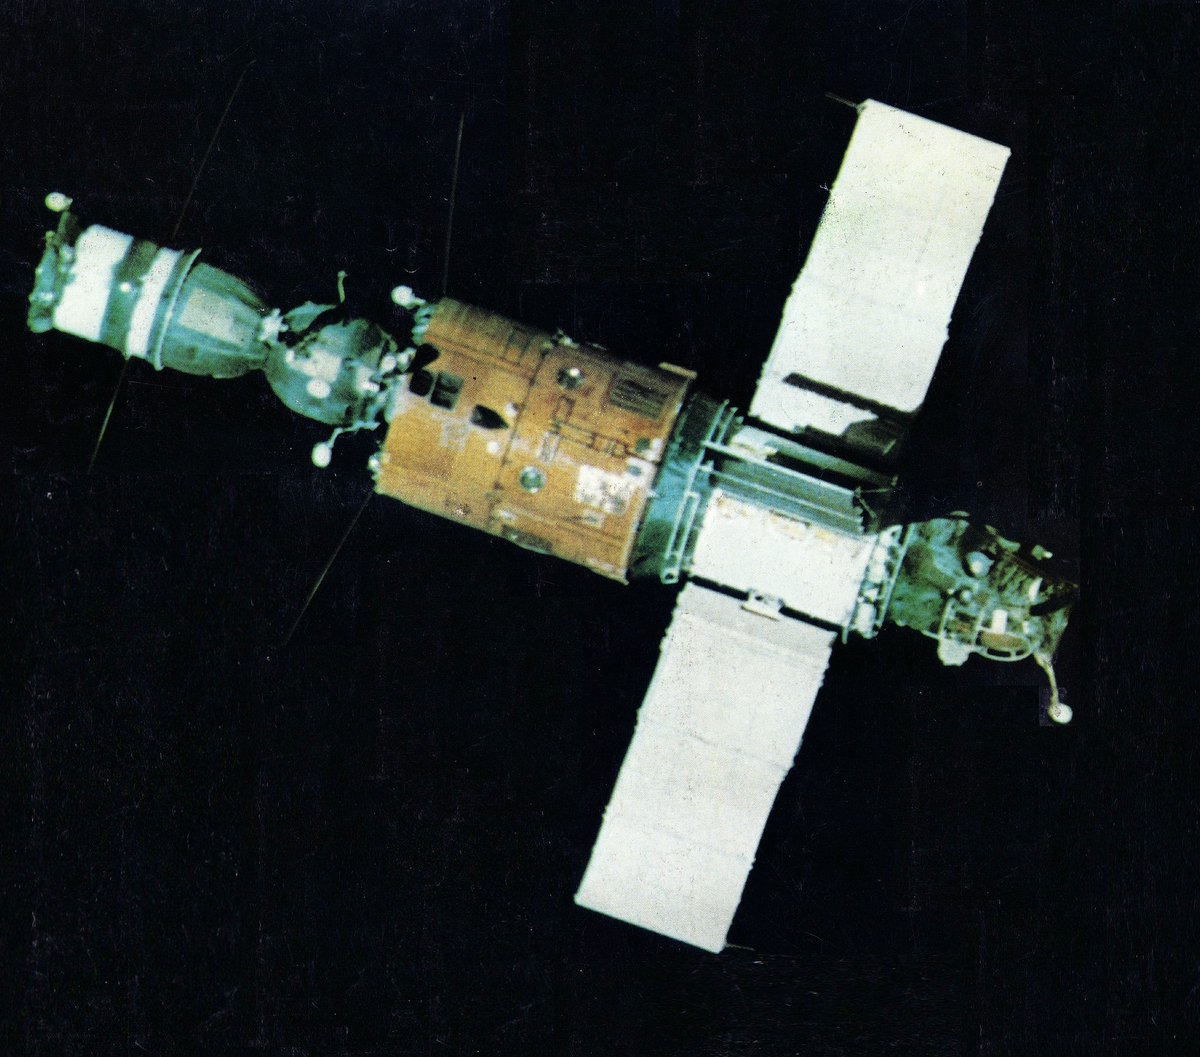 Saliout 6 avec un module Soyouz accroché, observé lors de l'approche (ou du départ) d'un équipage. Notez le Soyouz sans panneau solaire © URSS / N.A.